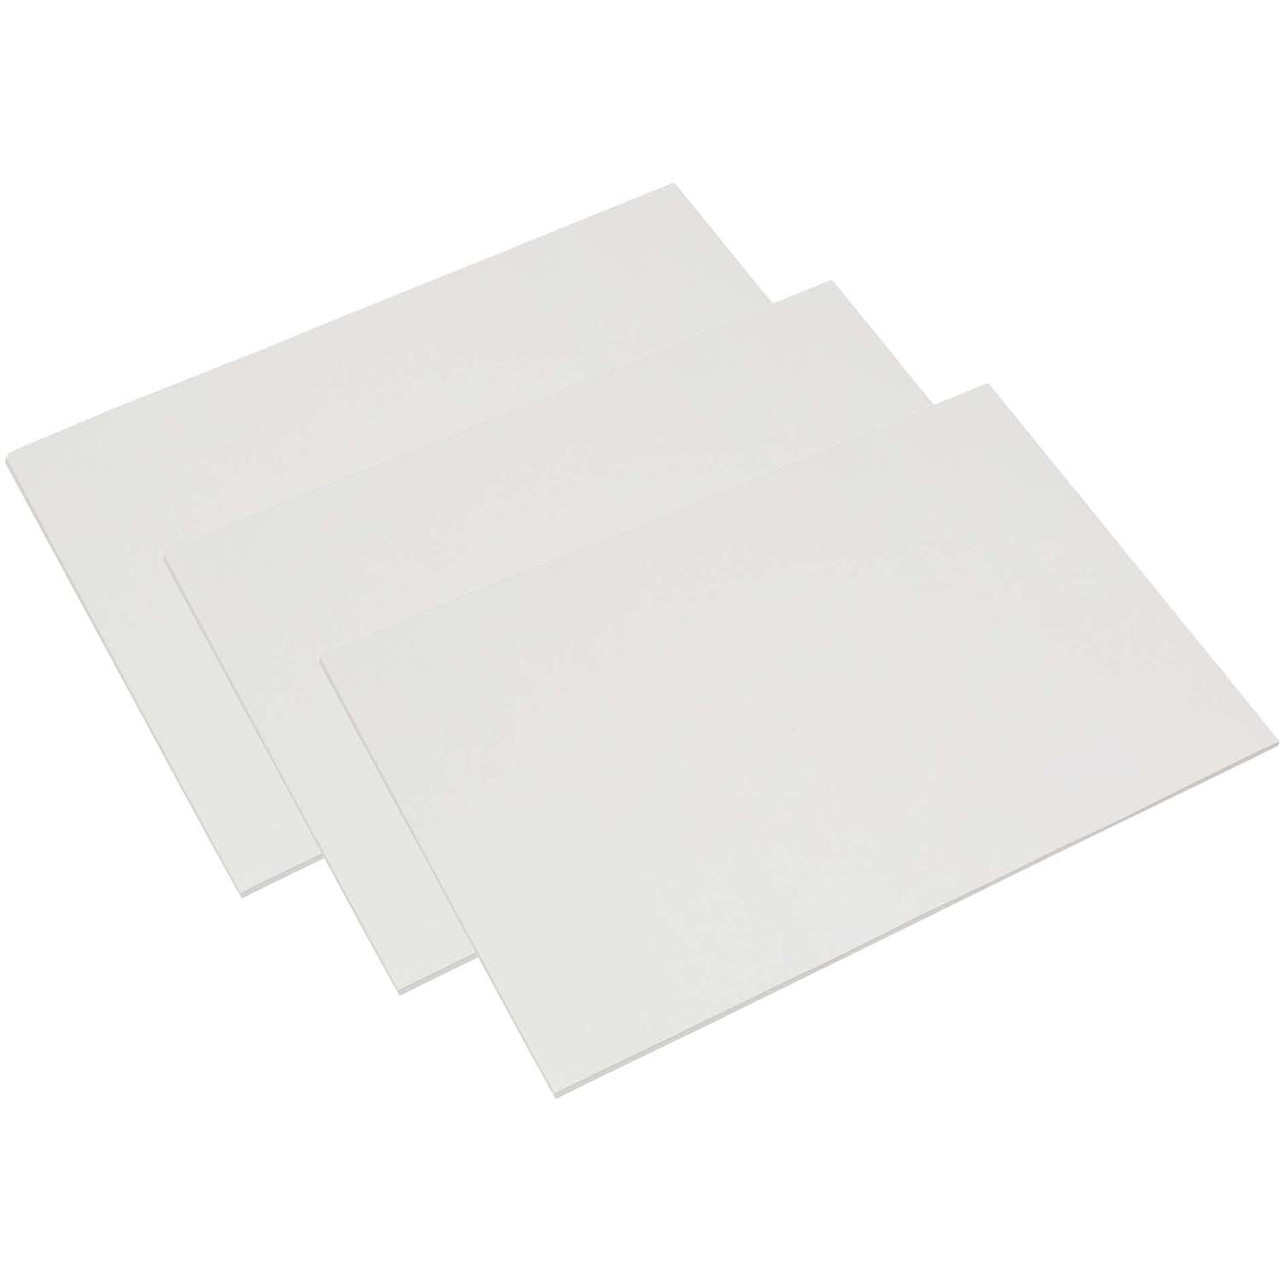 Premium Construction Paper, Black & White, 12 x 18, 72 sheets - PAC6677